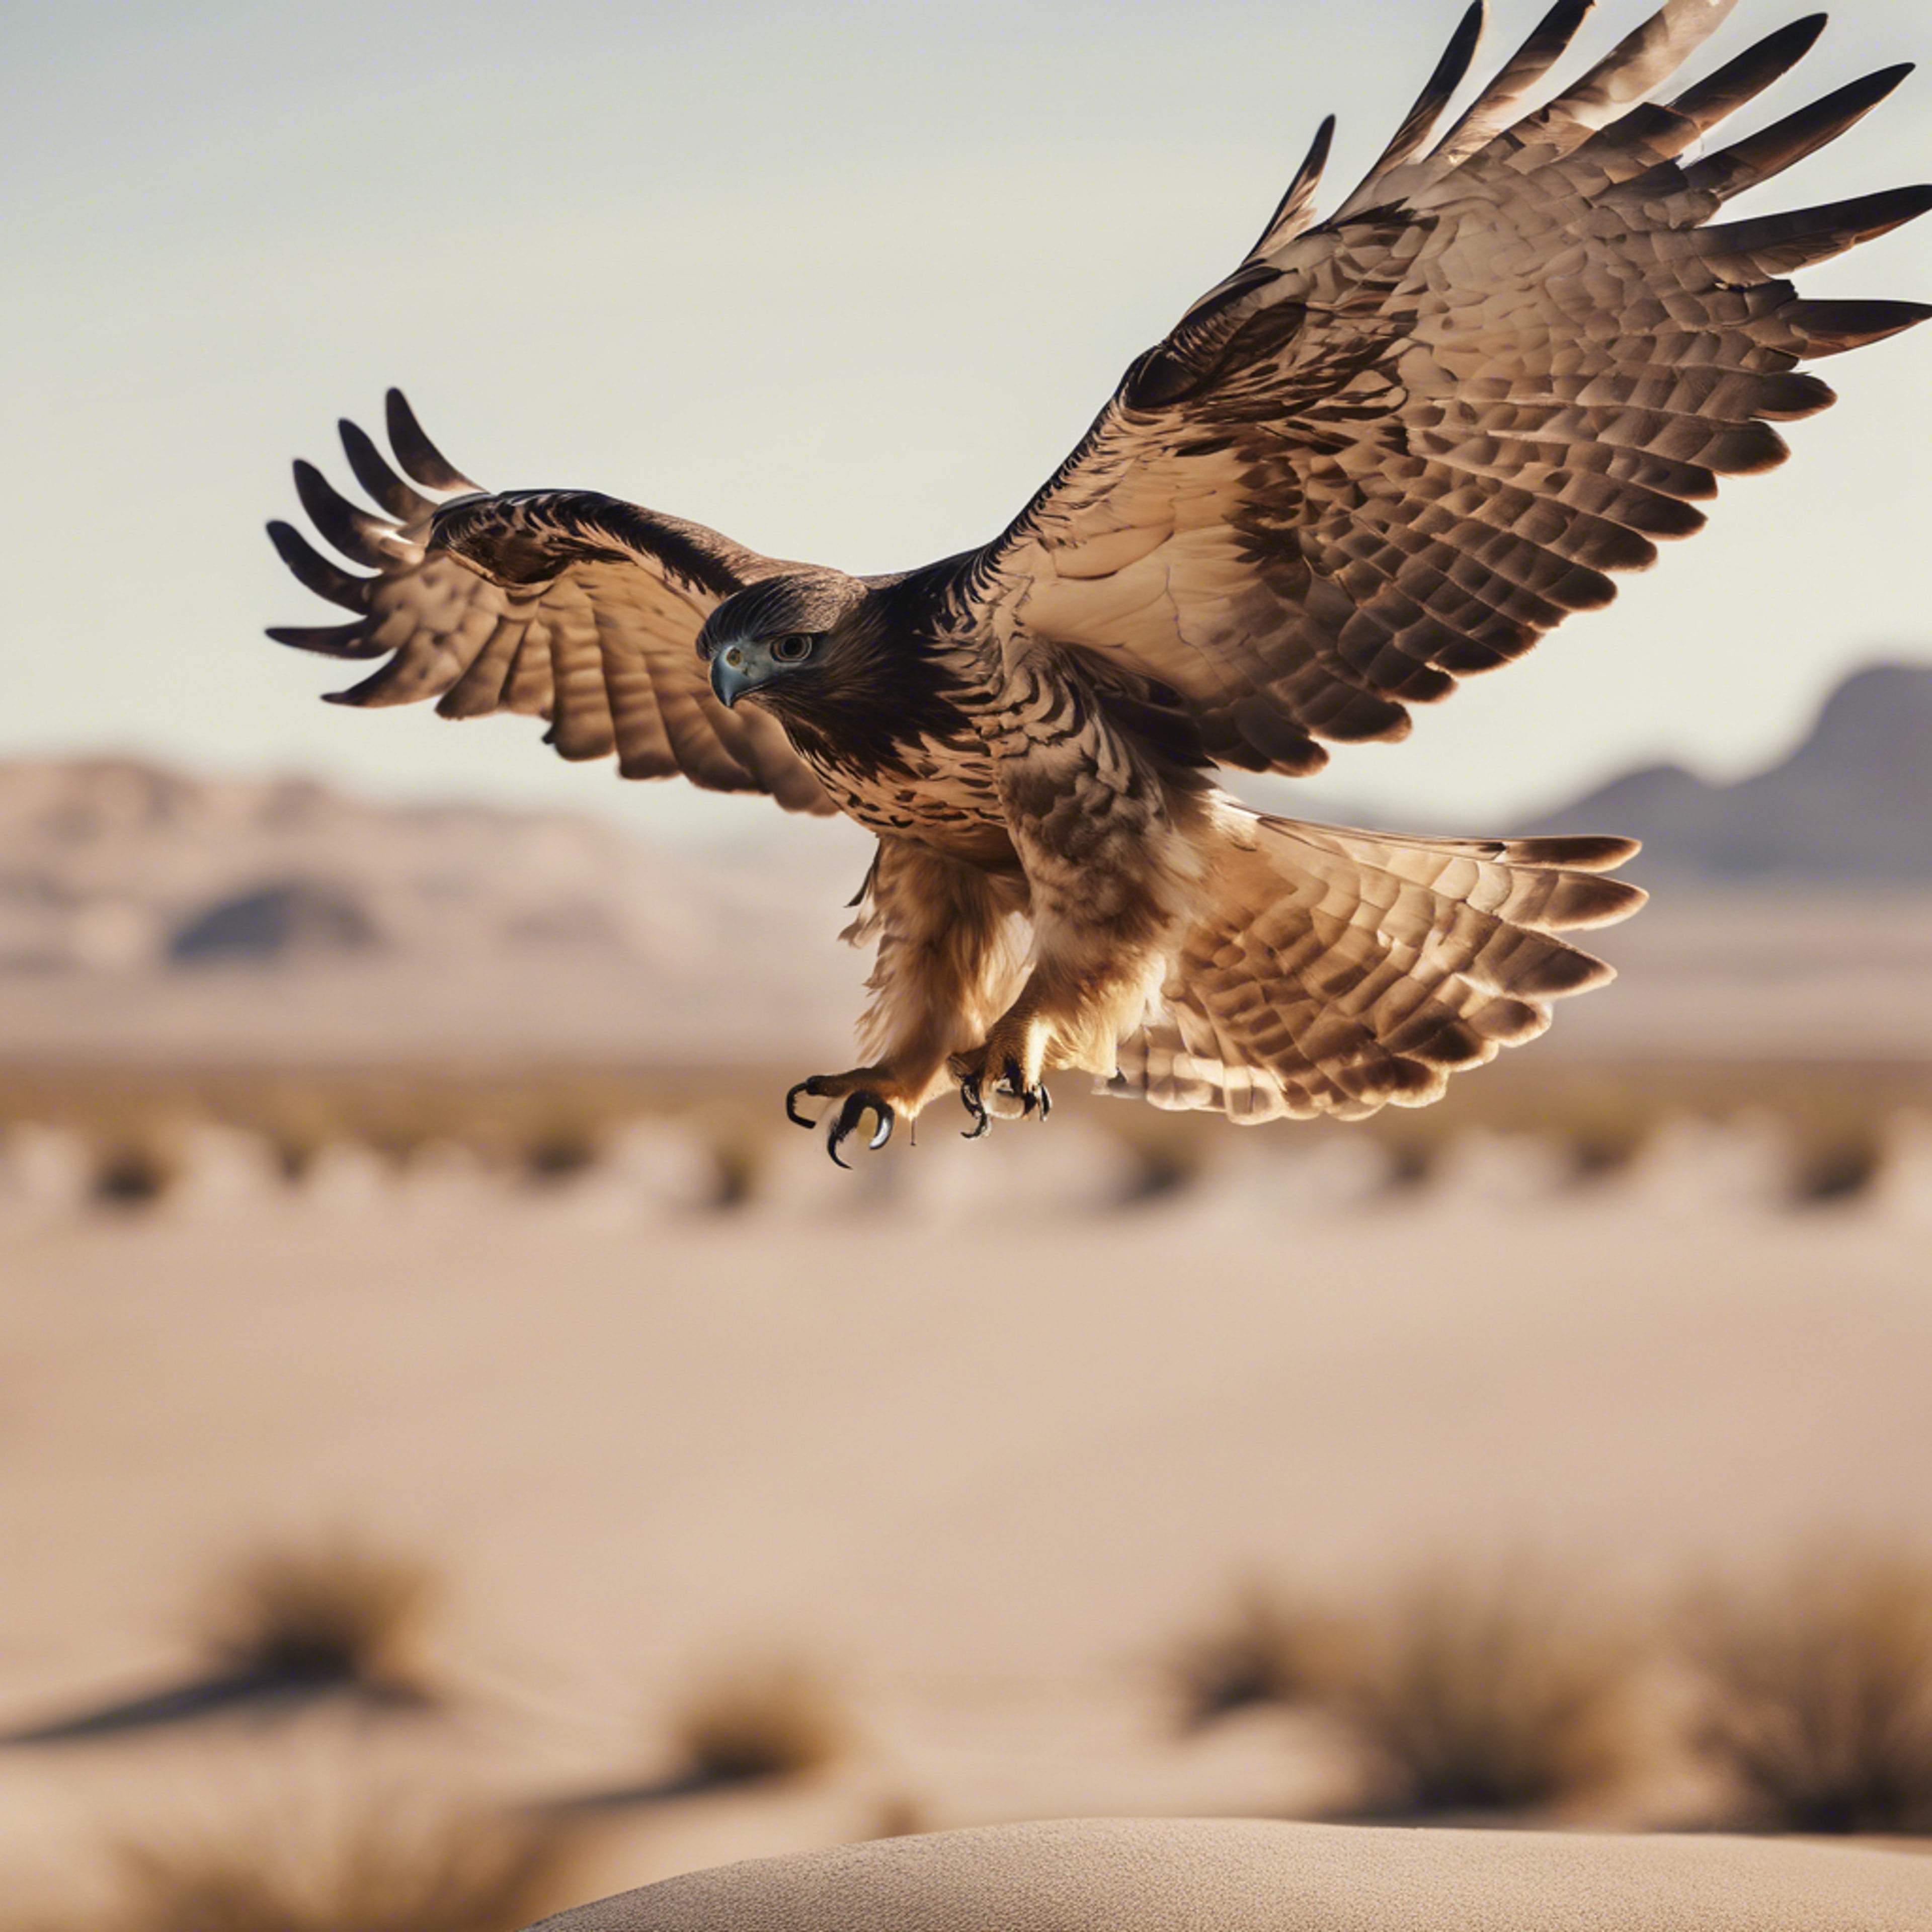 A hawk taking flight from its perch in a cool beige desert landscape.壁紙[f9770860966b45f09558]